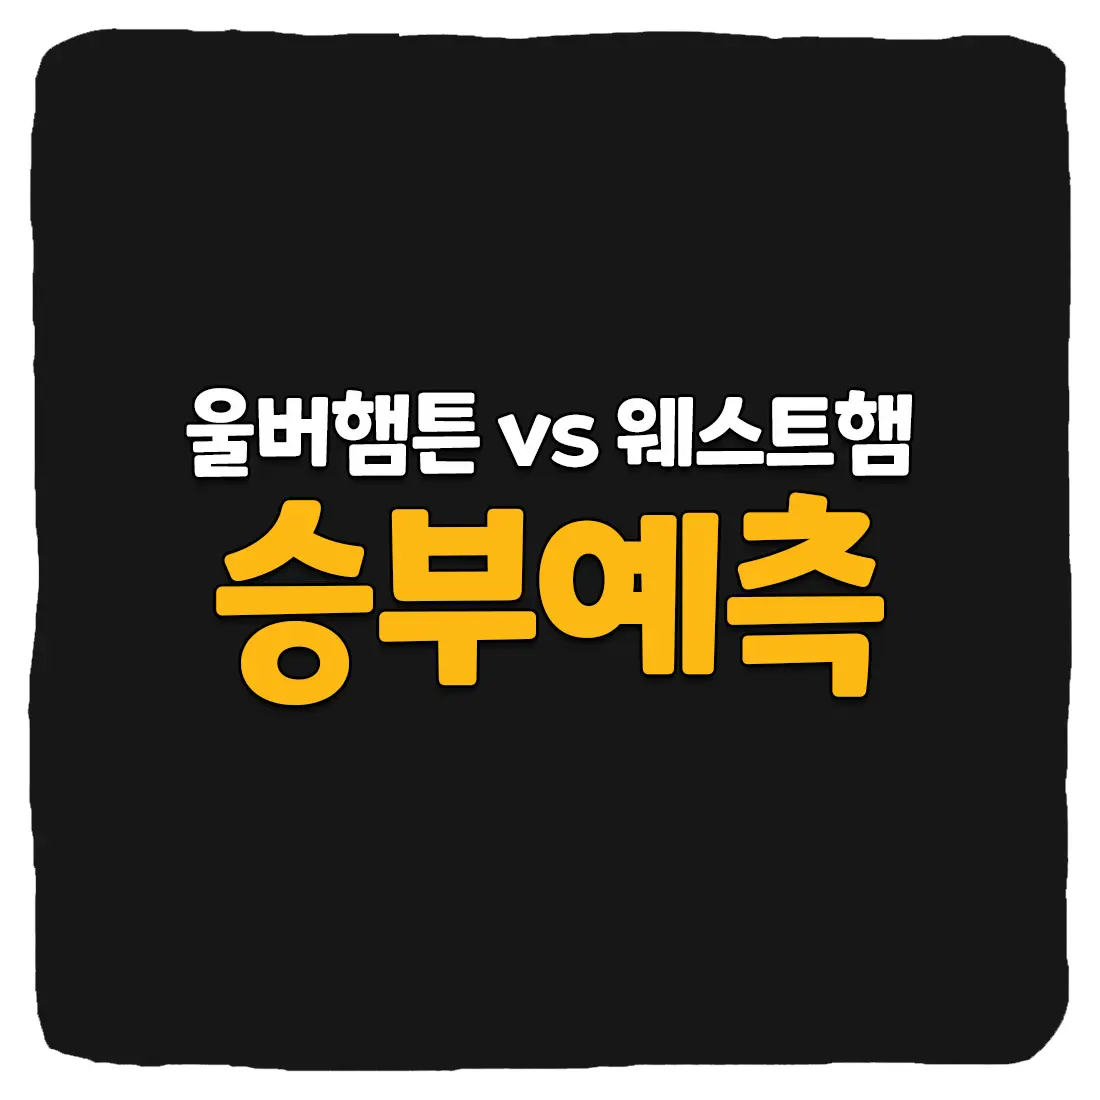 울버햄튼 vs 웨스트햄 축구 상대 전적 및 생중계 채널